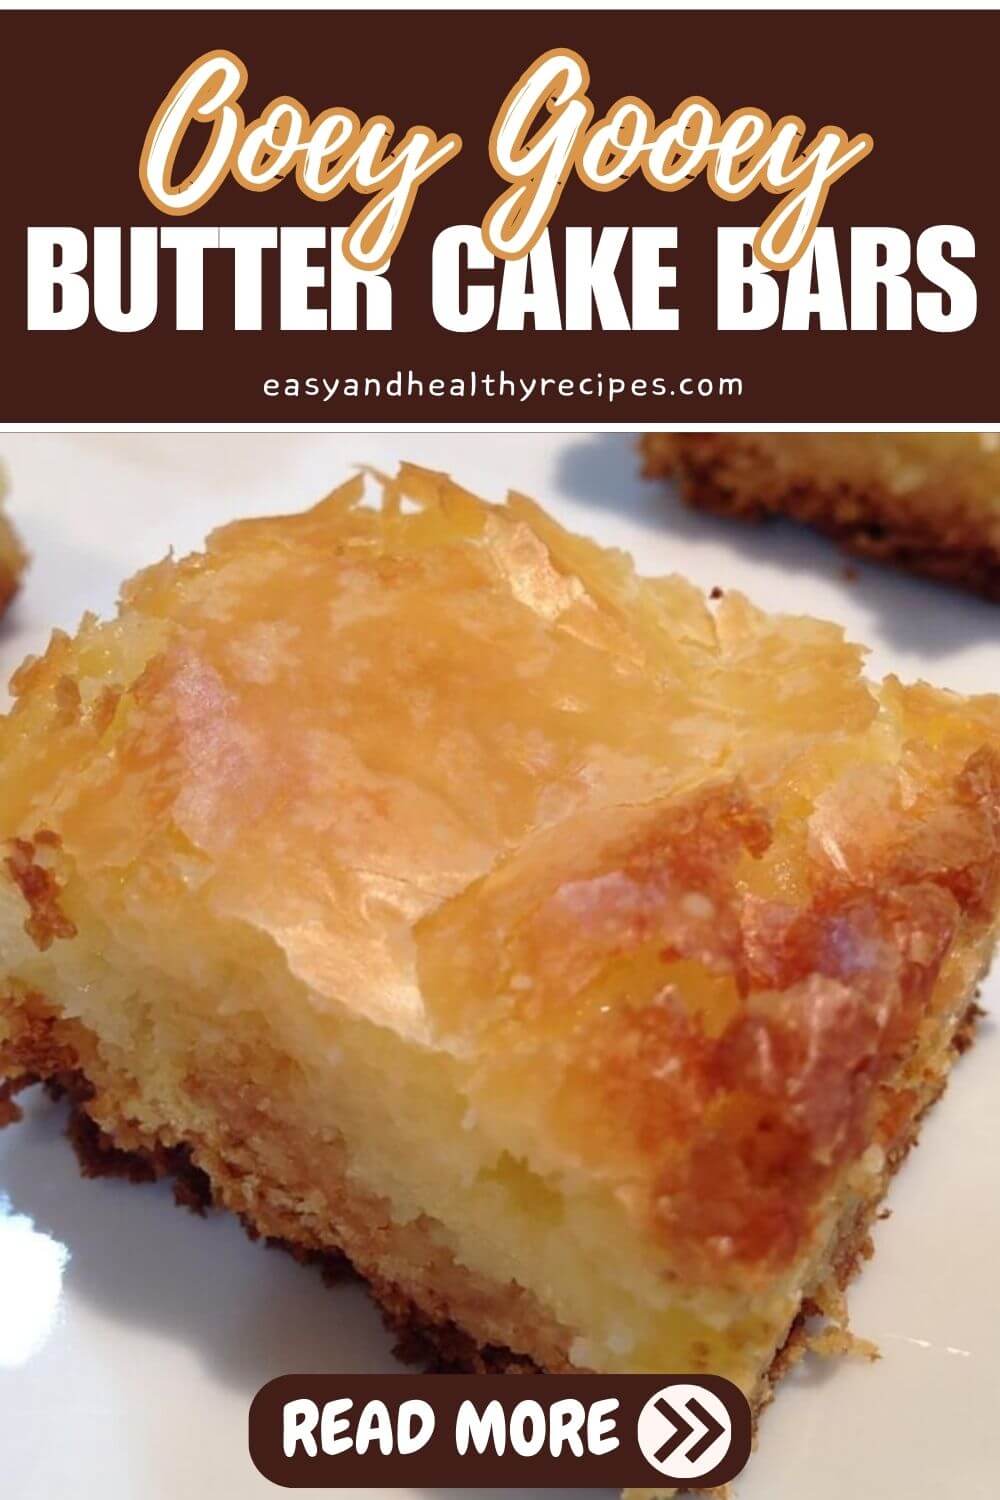 Butter Cake Bars